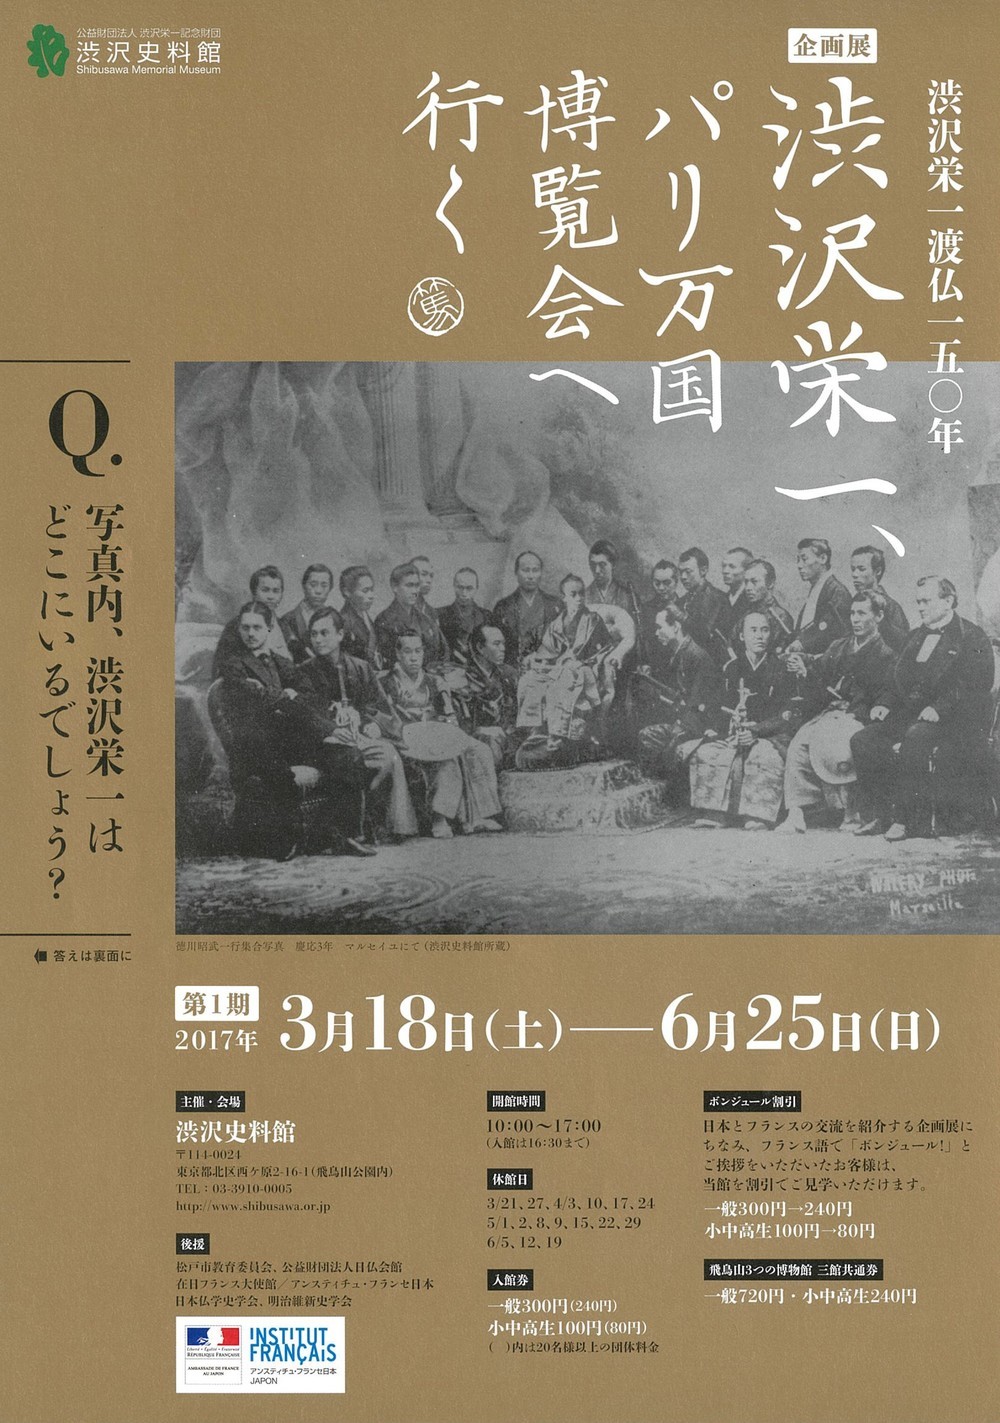 東京・渋沢史料館で、渋沢栄一の渡仏150年を記念した企画展